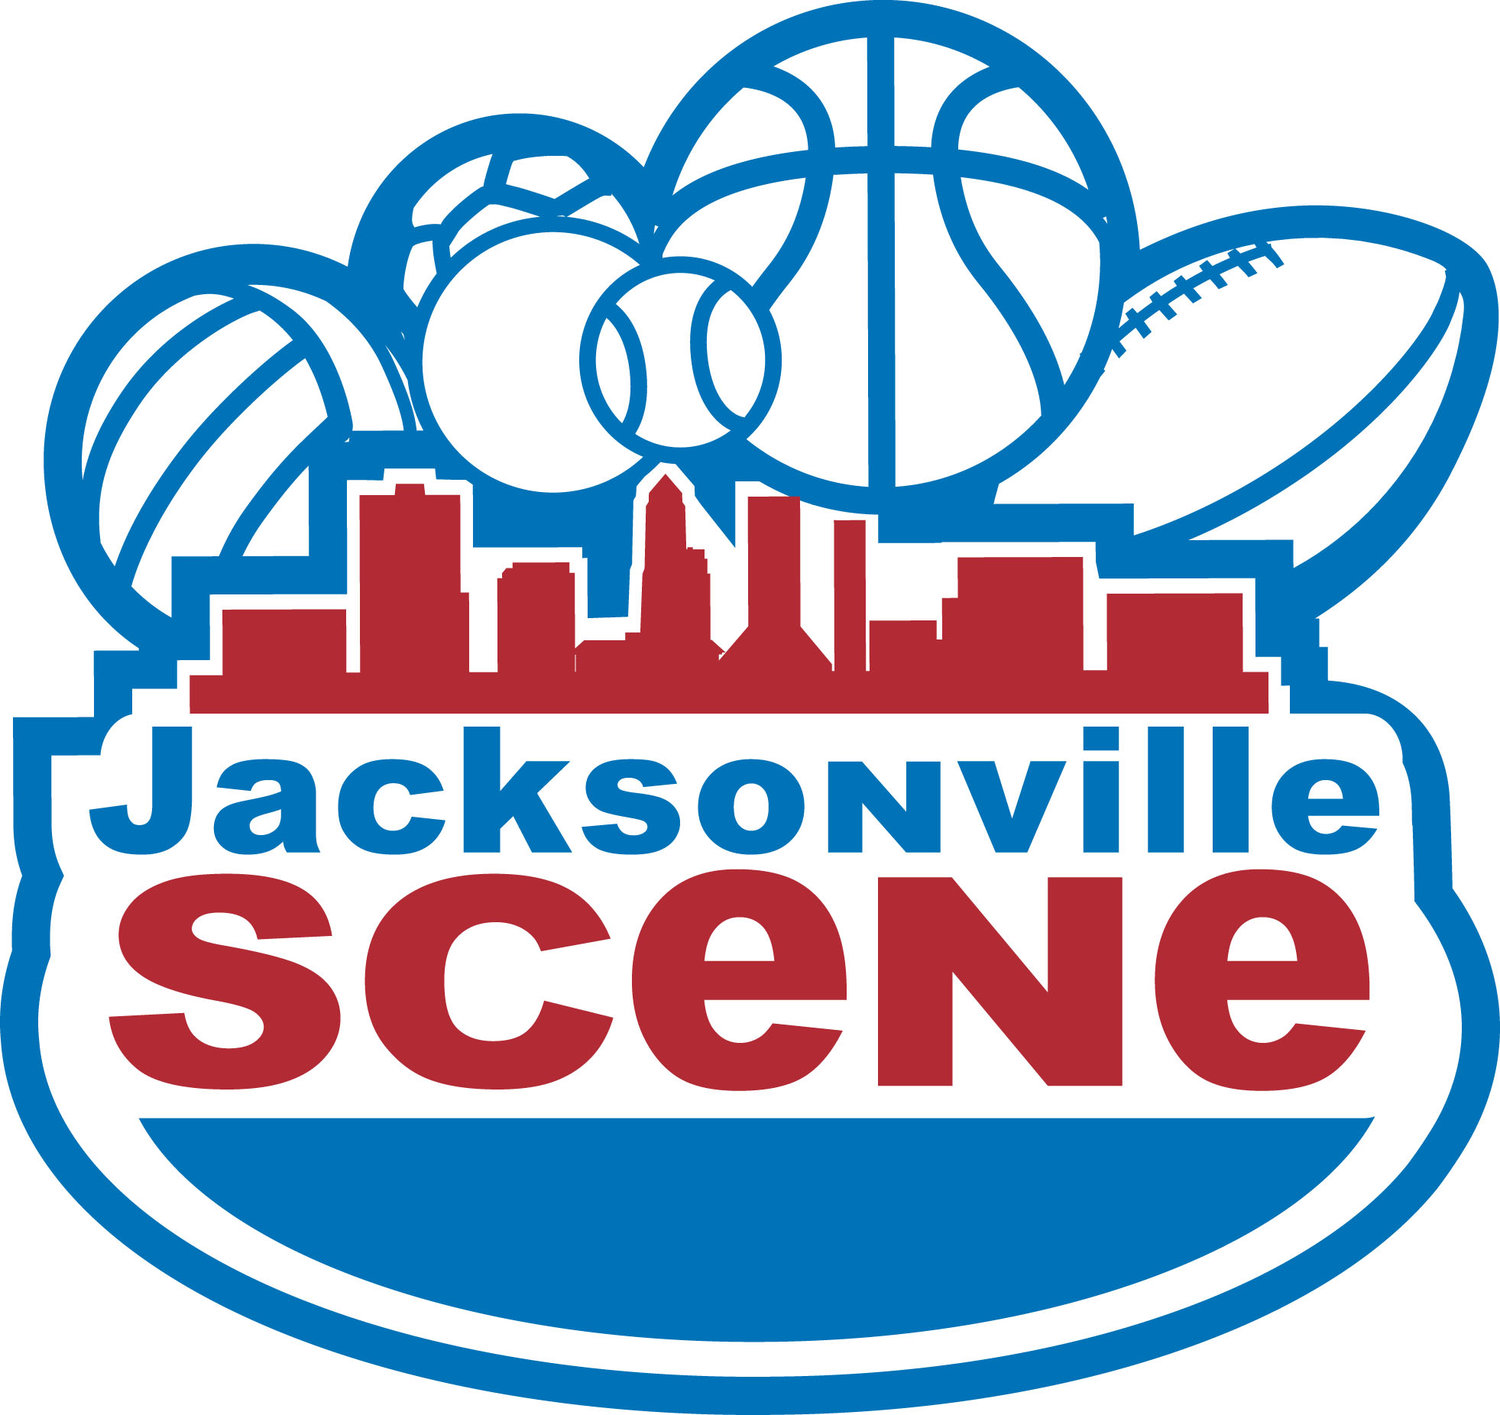 Jacksonville Scene